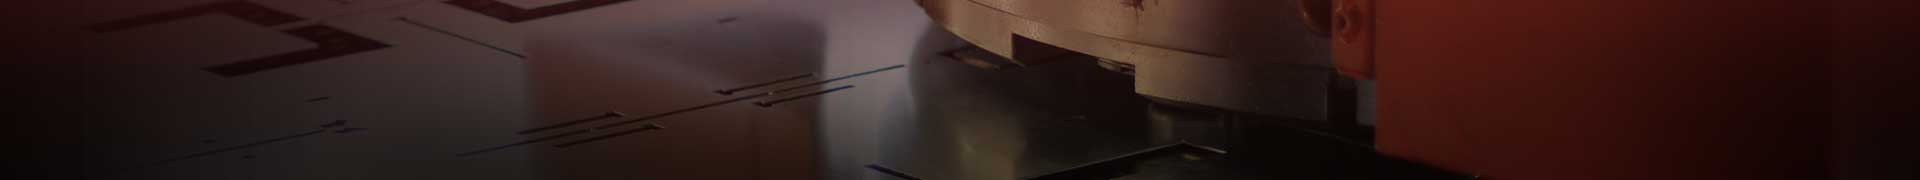 Close Up of Steel Cutting Machine